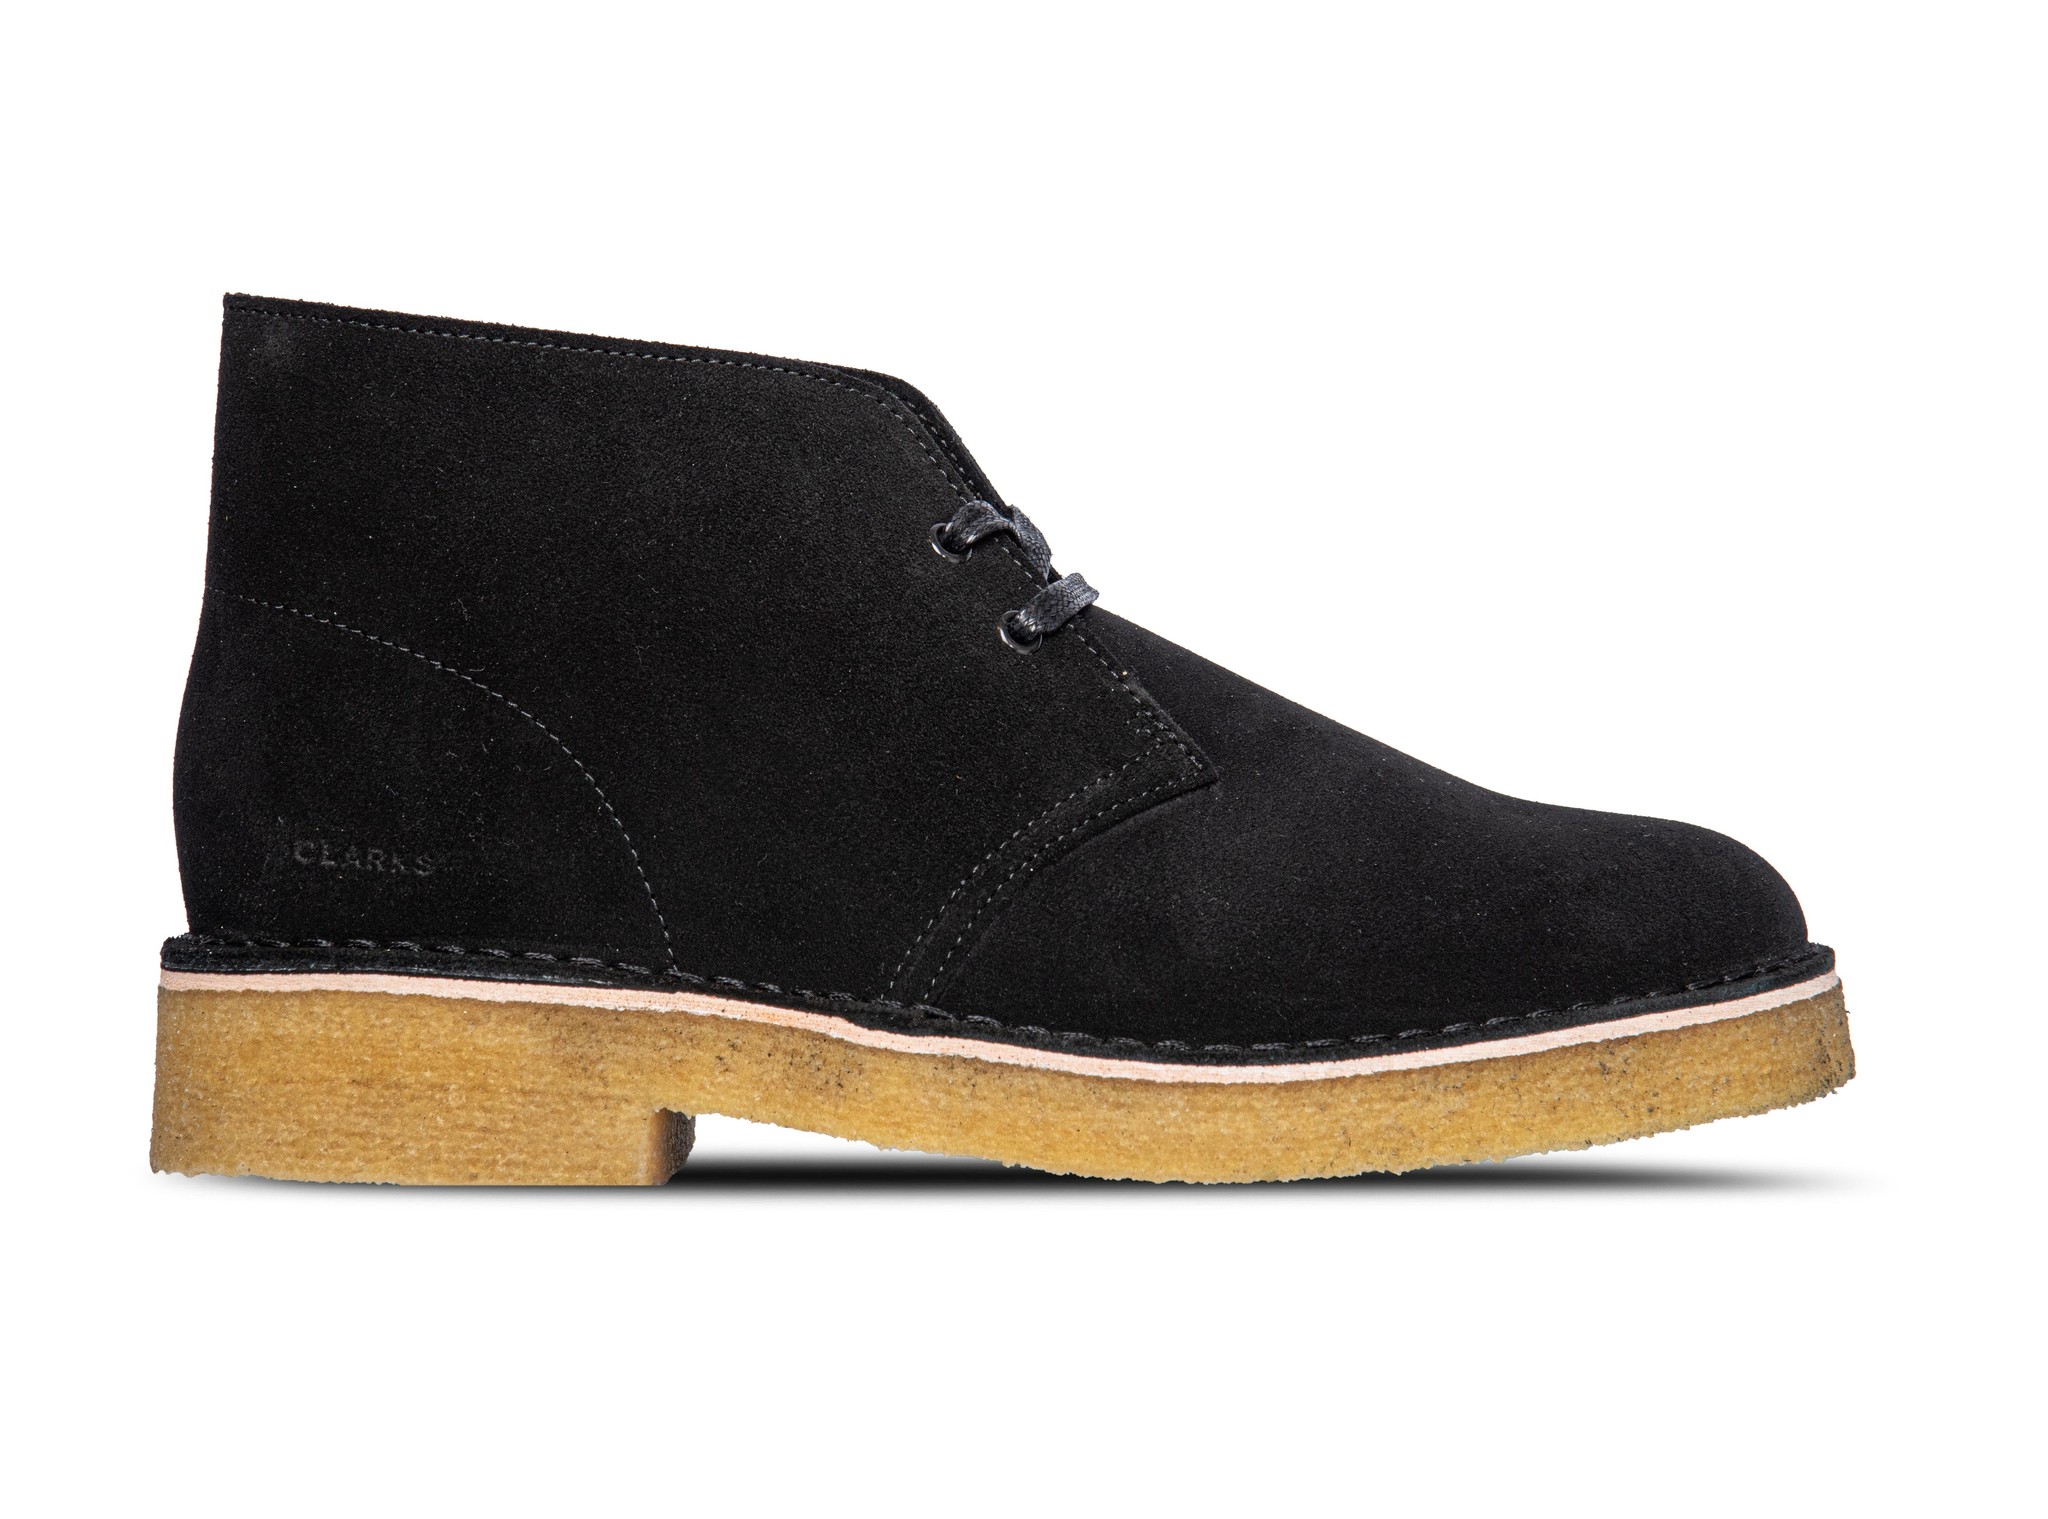 Clarks Originals Desert Boot 221 Black Suede 26155855 | Bruut Online Shop Bruut Sneakers & Store